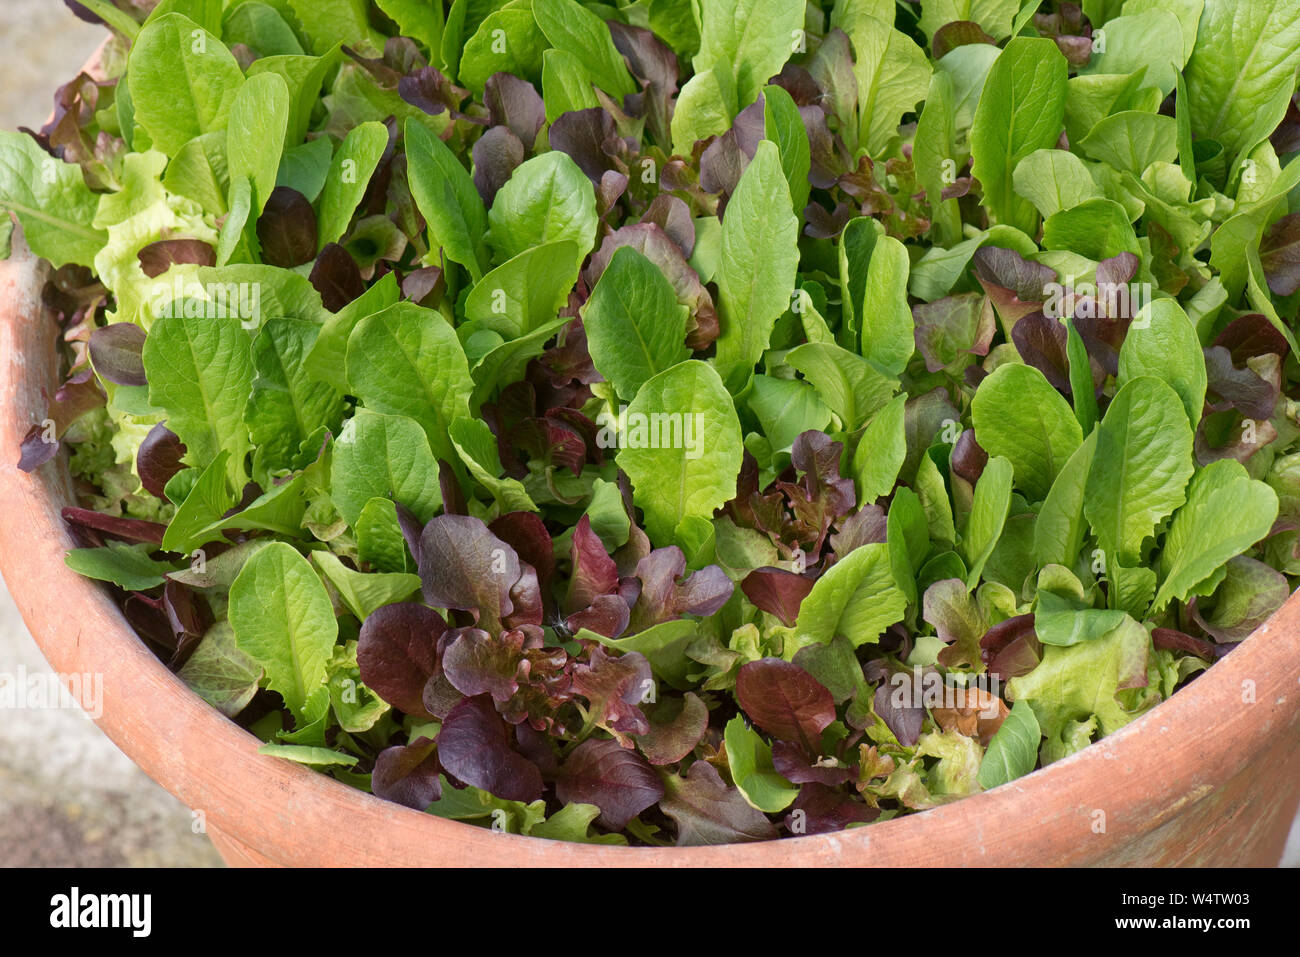 Le rouge et le vert laitue cultivée dans un récipient en terre cuite pour fournir cut et reviens bébé feuilles de laitue en salade Banque D'Images